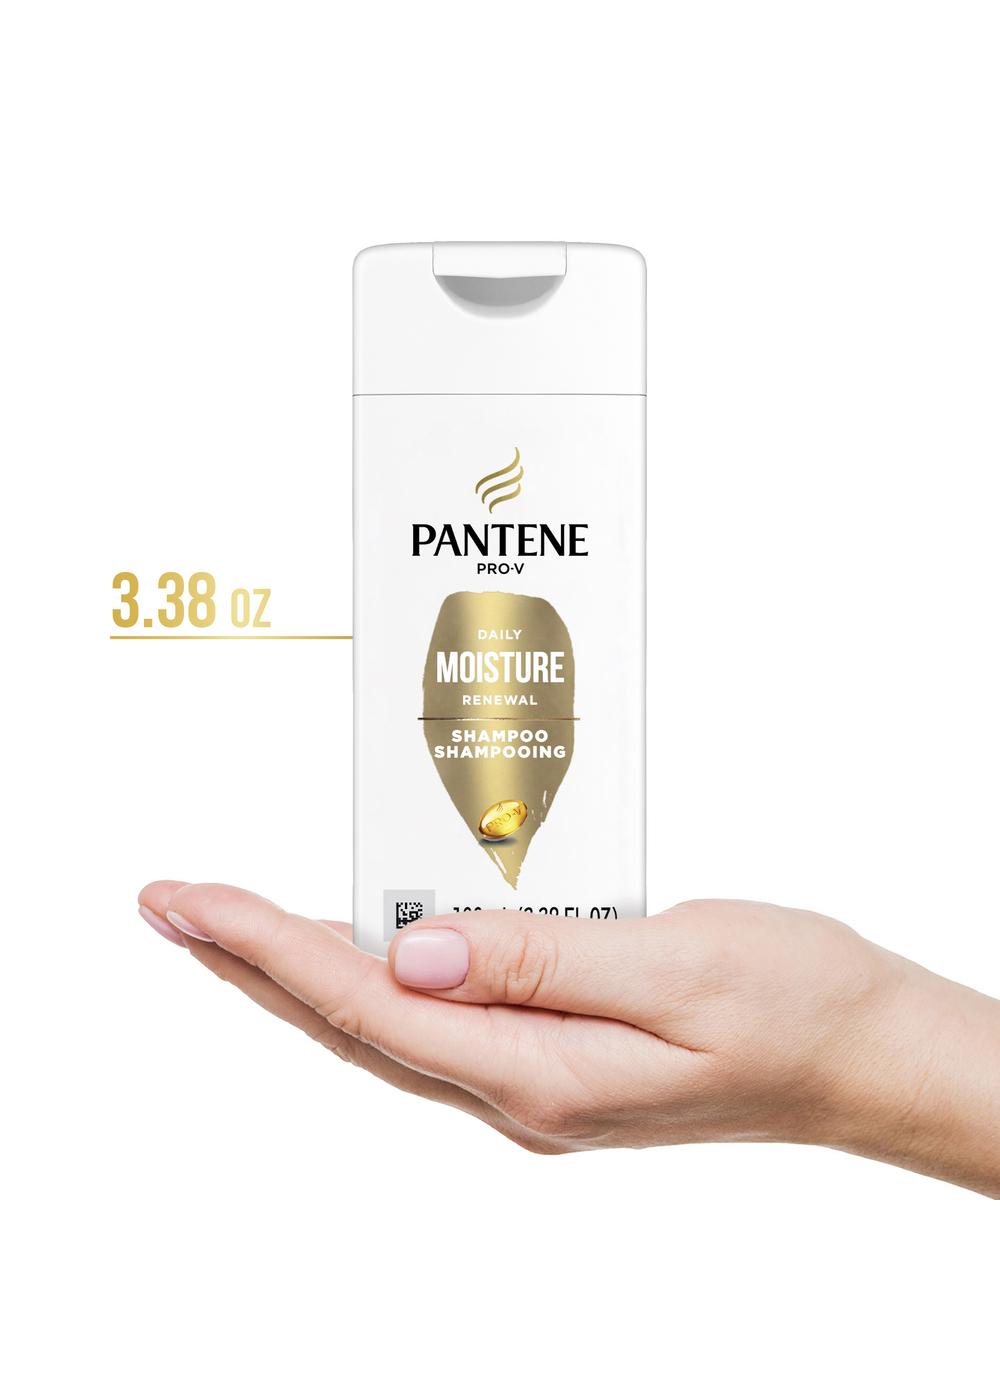 Pantene Pro-V Daily Moisture Renewal Shampoo - Travel Size; image 3 of 8